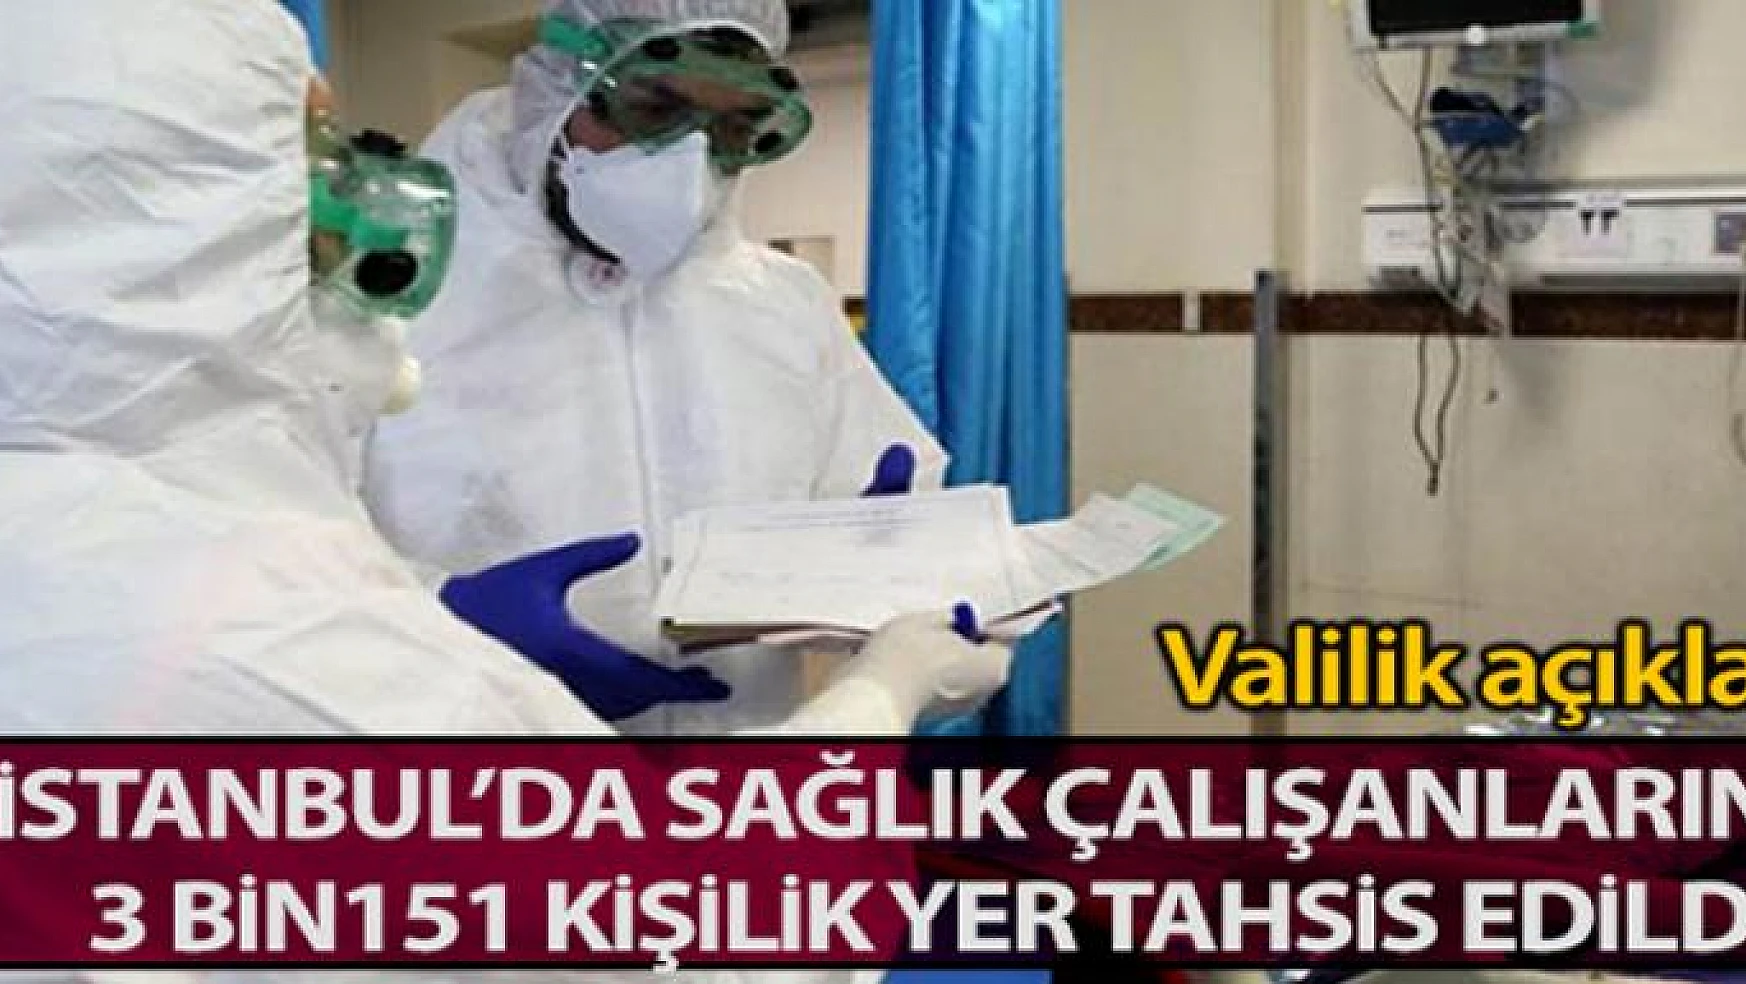 İstanbul'da sağlık çalışanlarına 3 bin 151 kişilik yer tahsis edildi